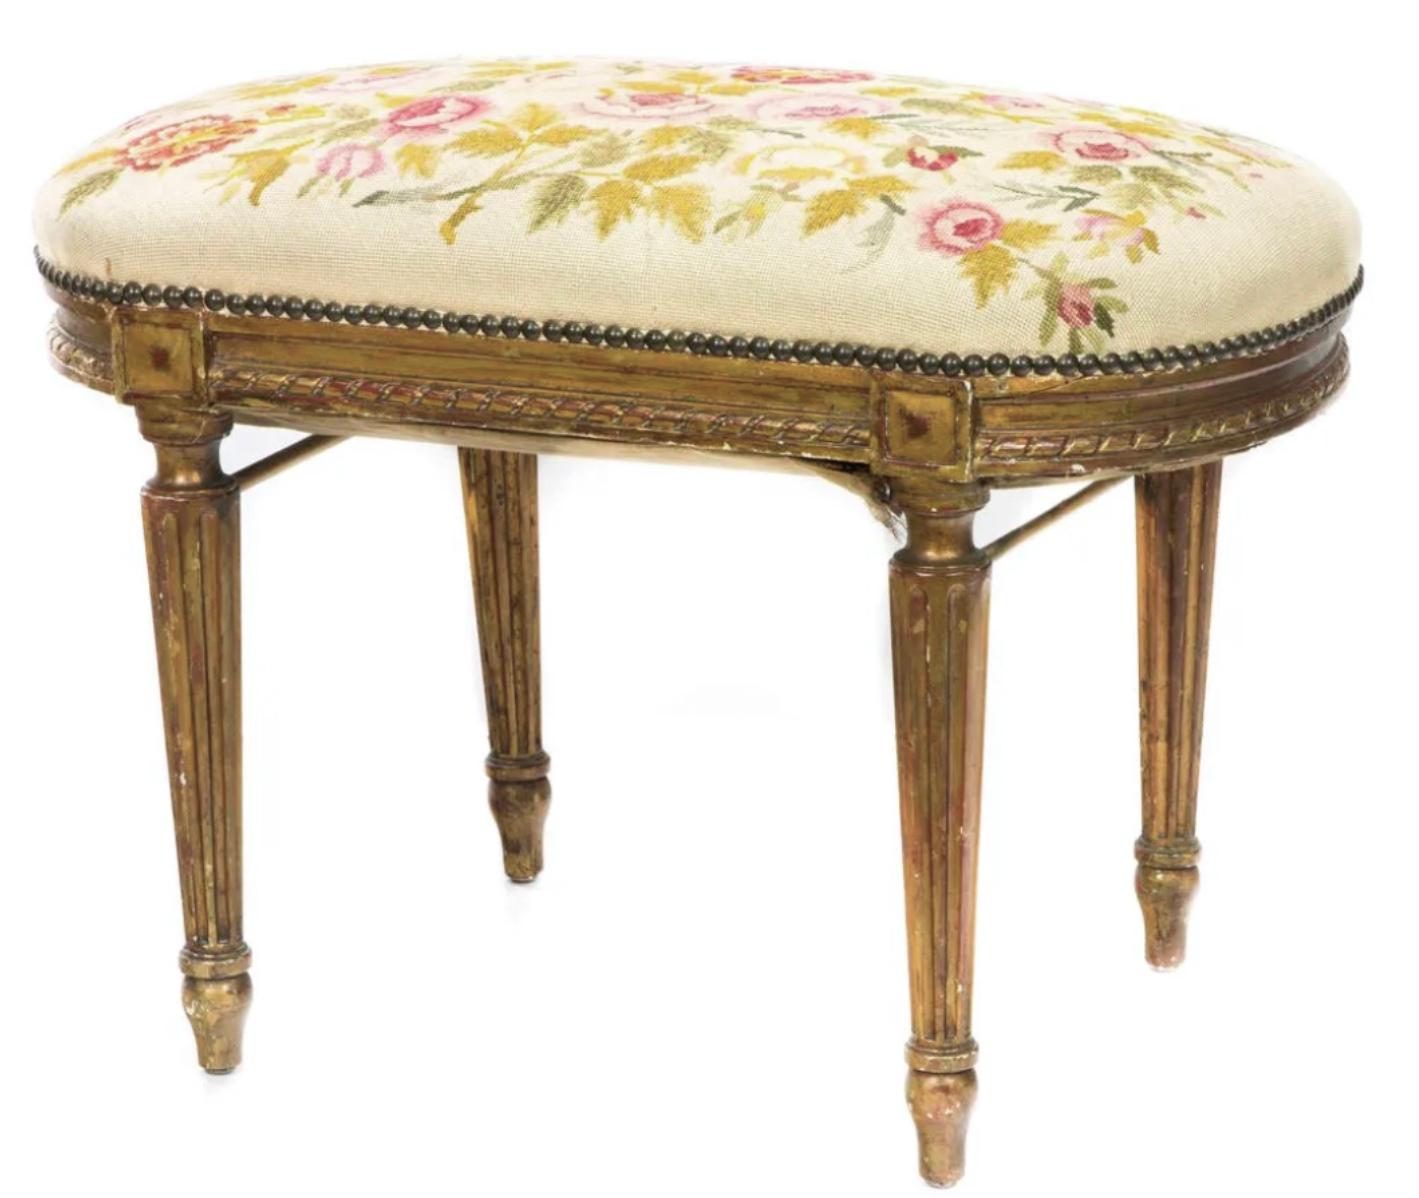 Ein vergoldetes Tabouret im Louis XVI-Stil, spätes 19. Jahrhundert, mit einer handgefertigten Platte, darüber geschnitzte und kannelierte Beine. Wunderbare alte warme Patina auf der Oberfläche.